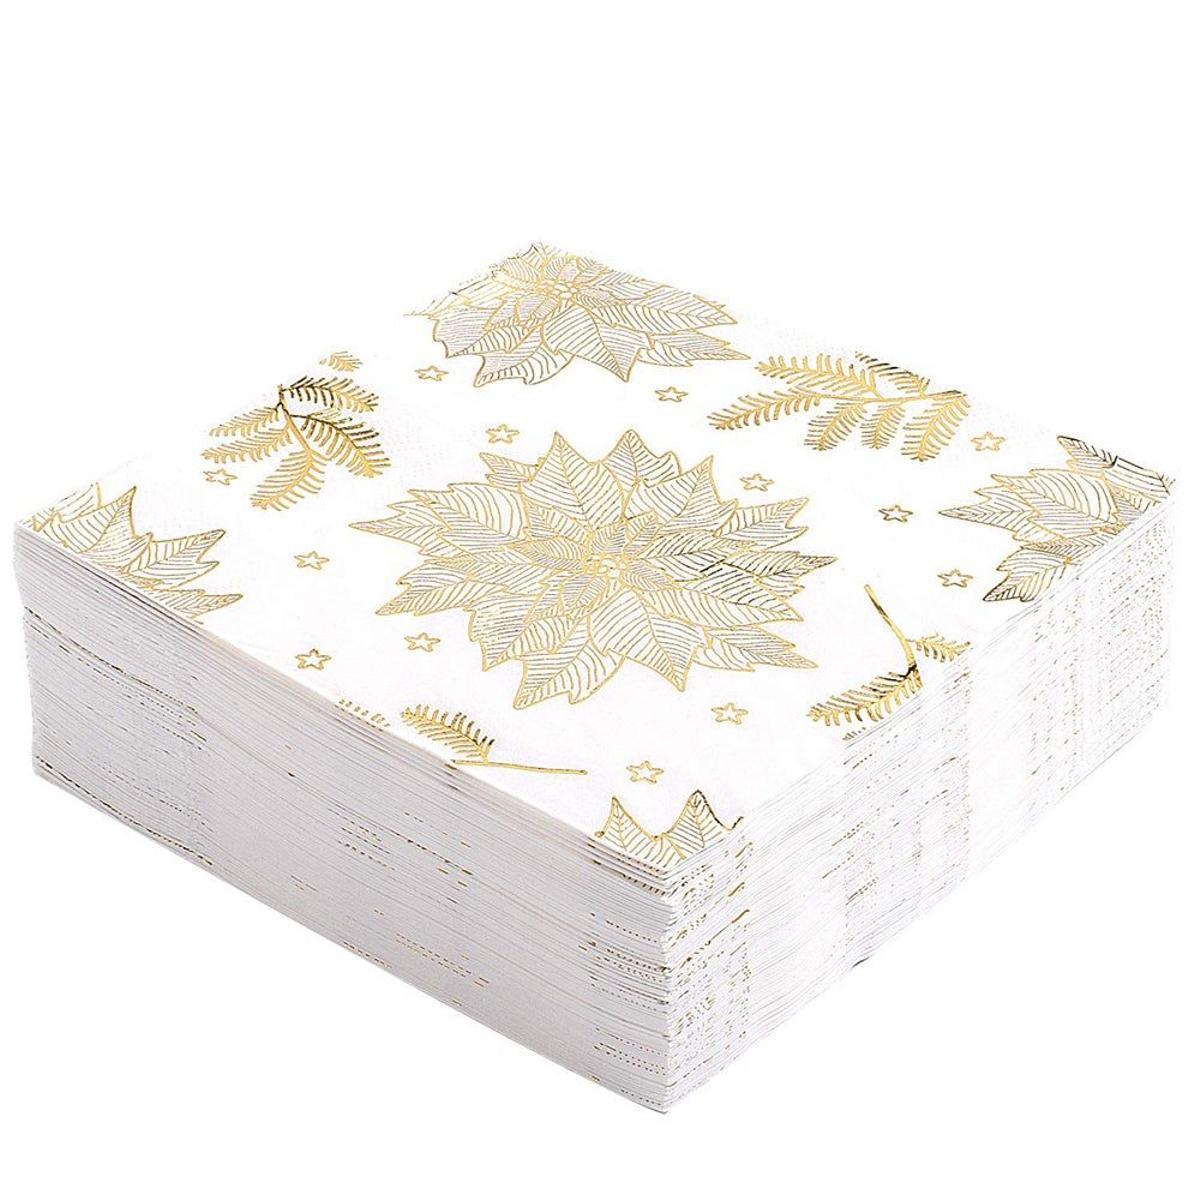 Servilletas de papel para Navidad (Precio: 11,99 euros)